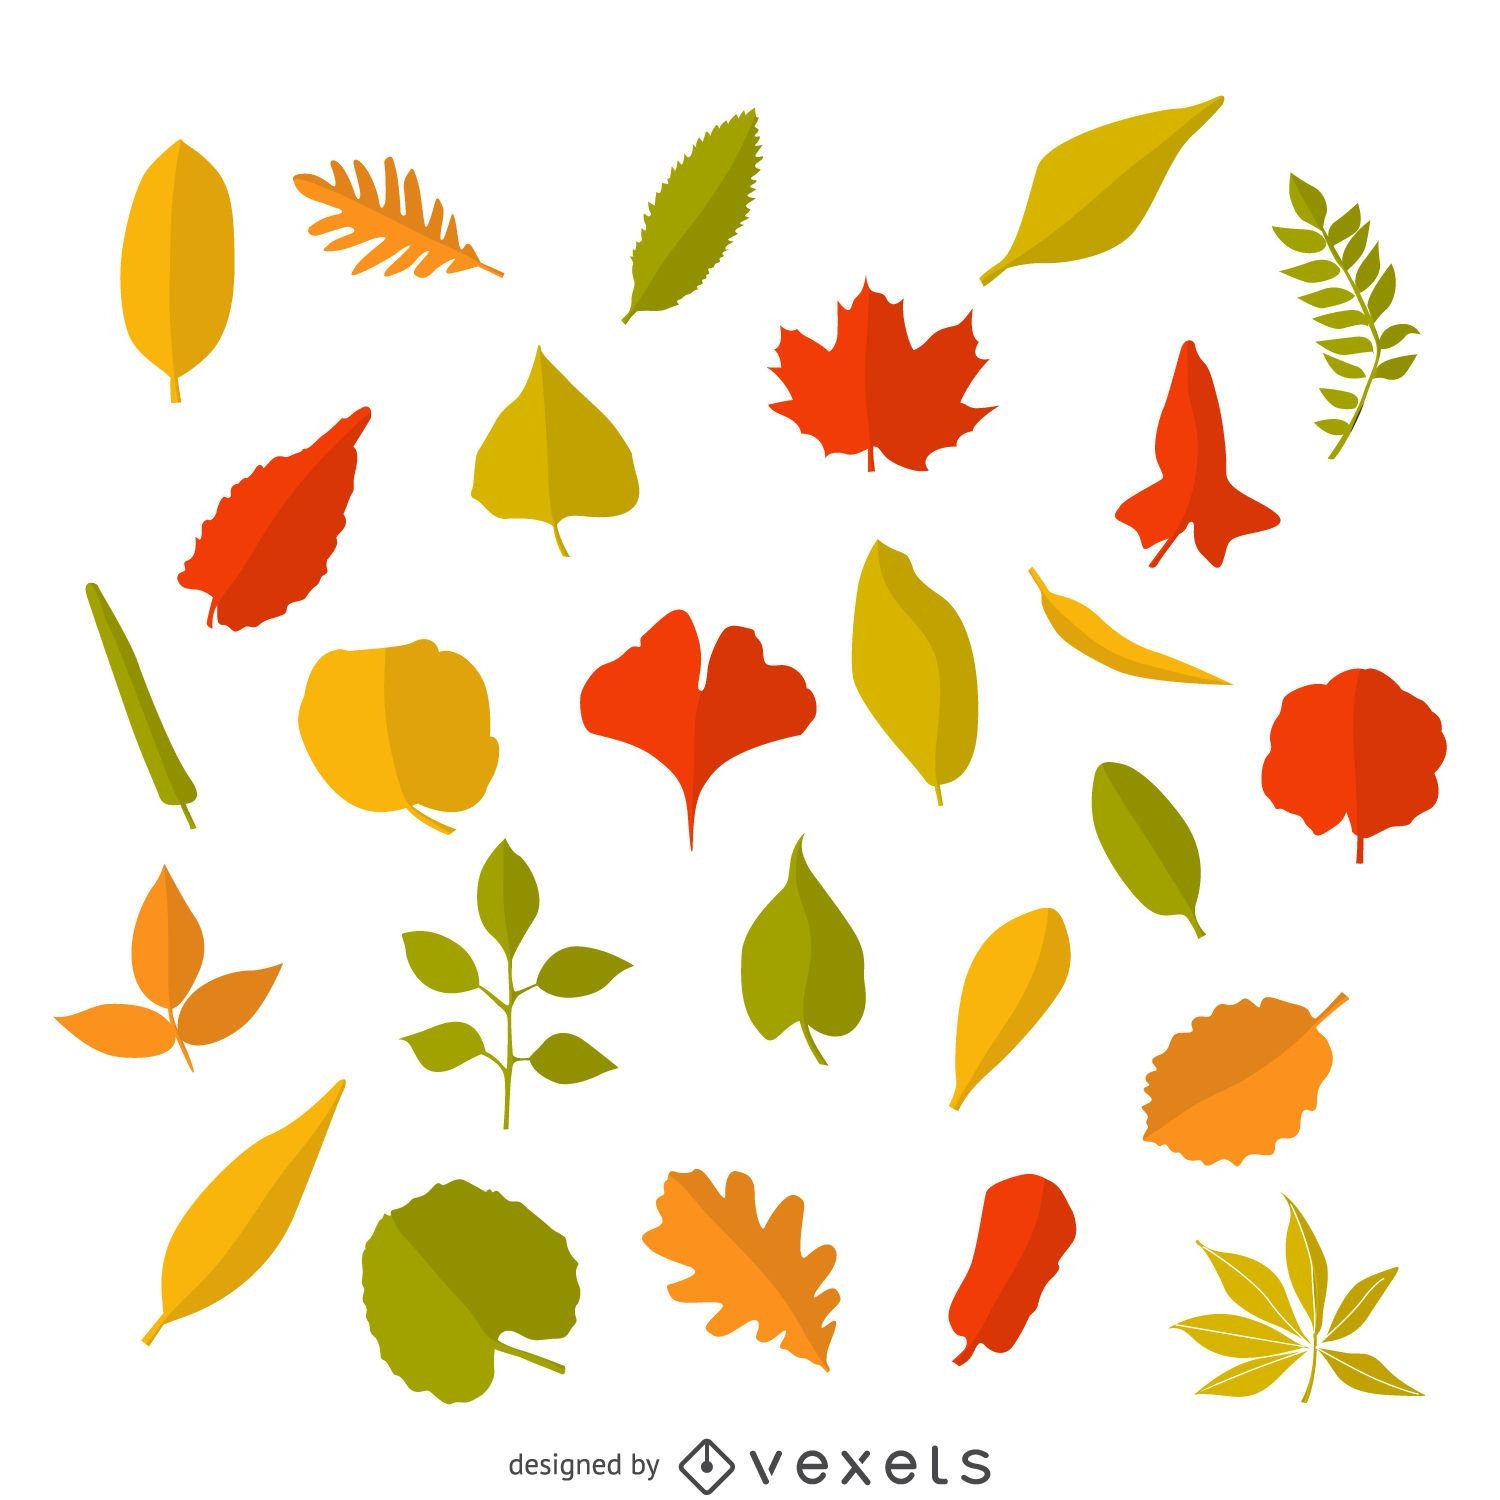 leaf illustration download